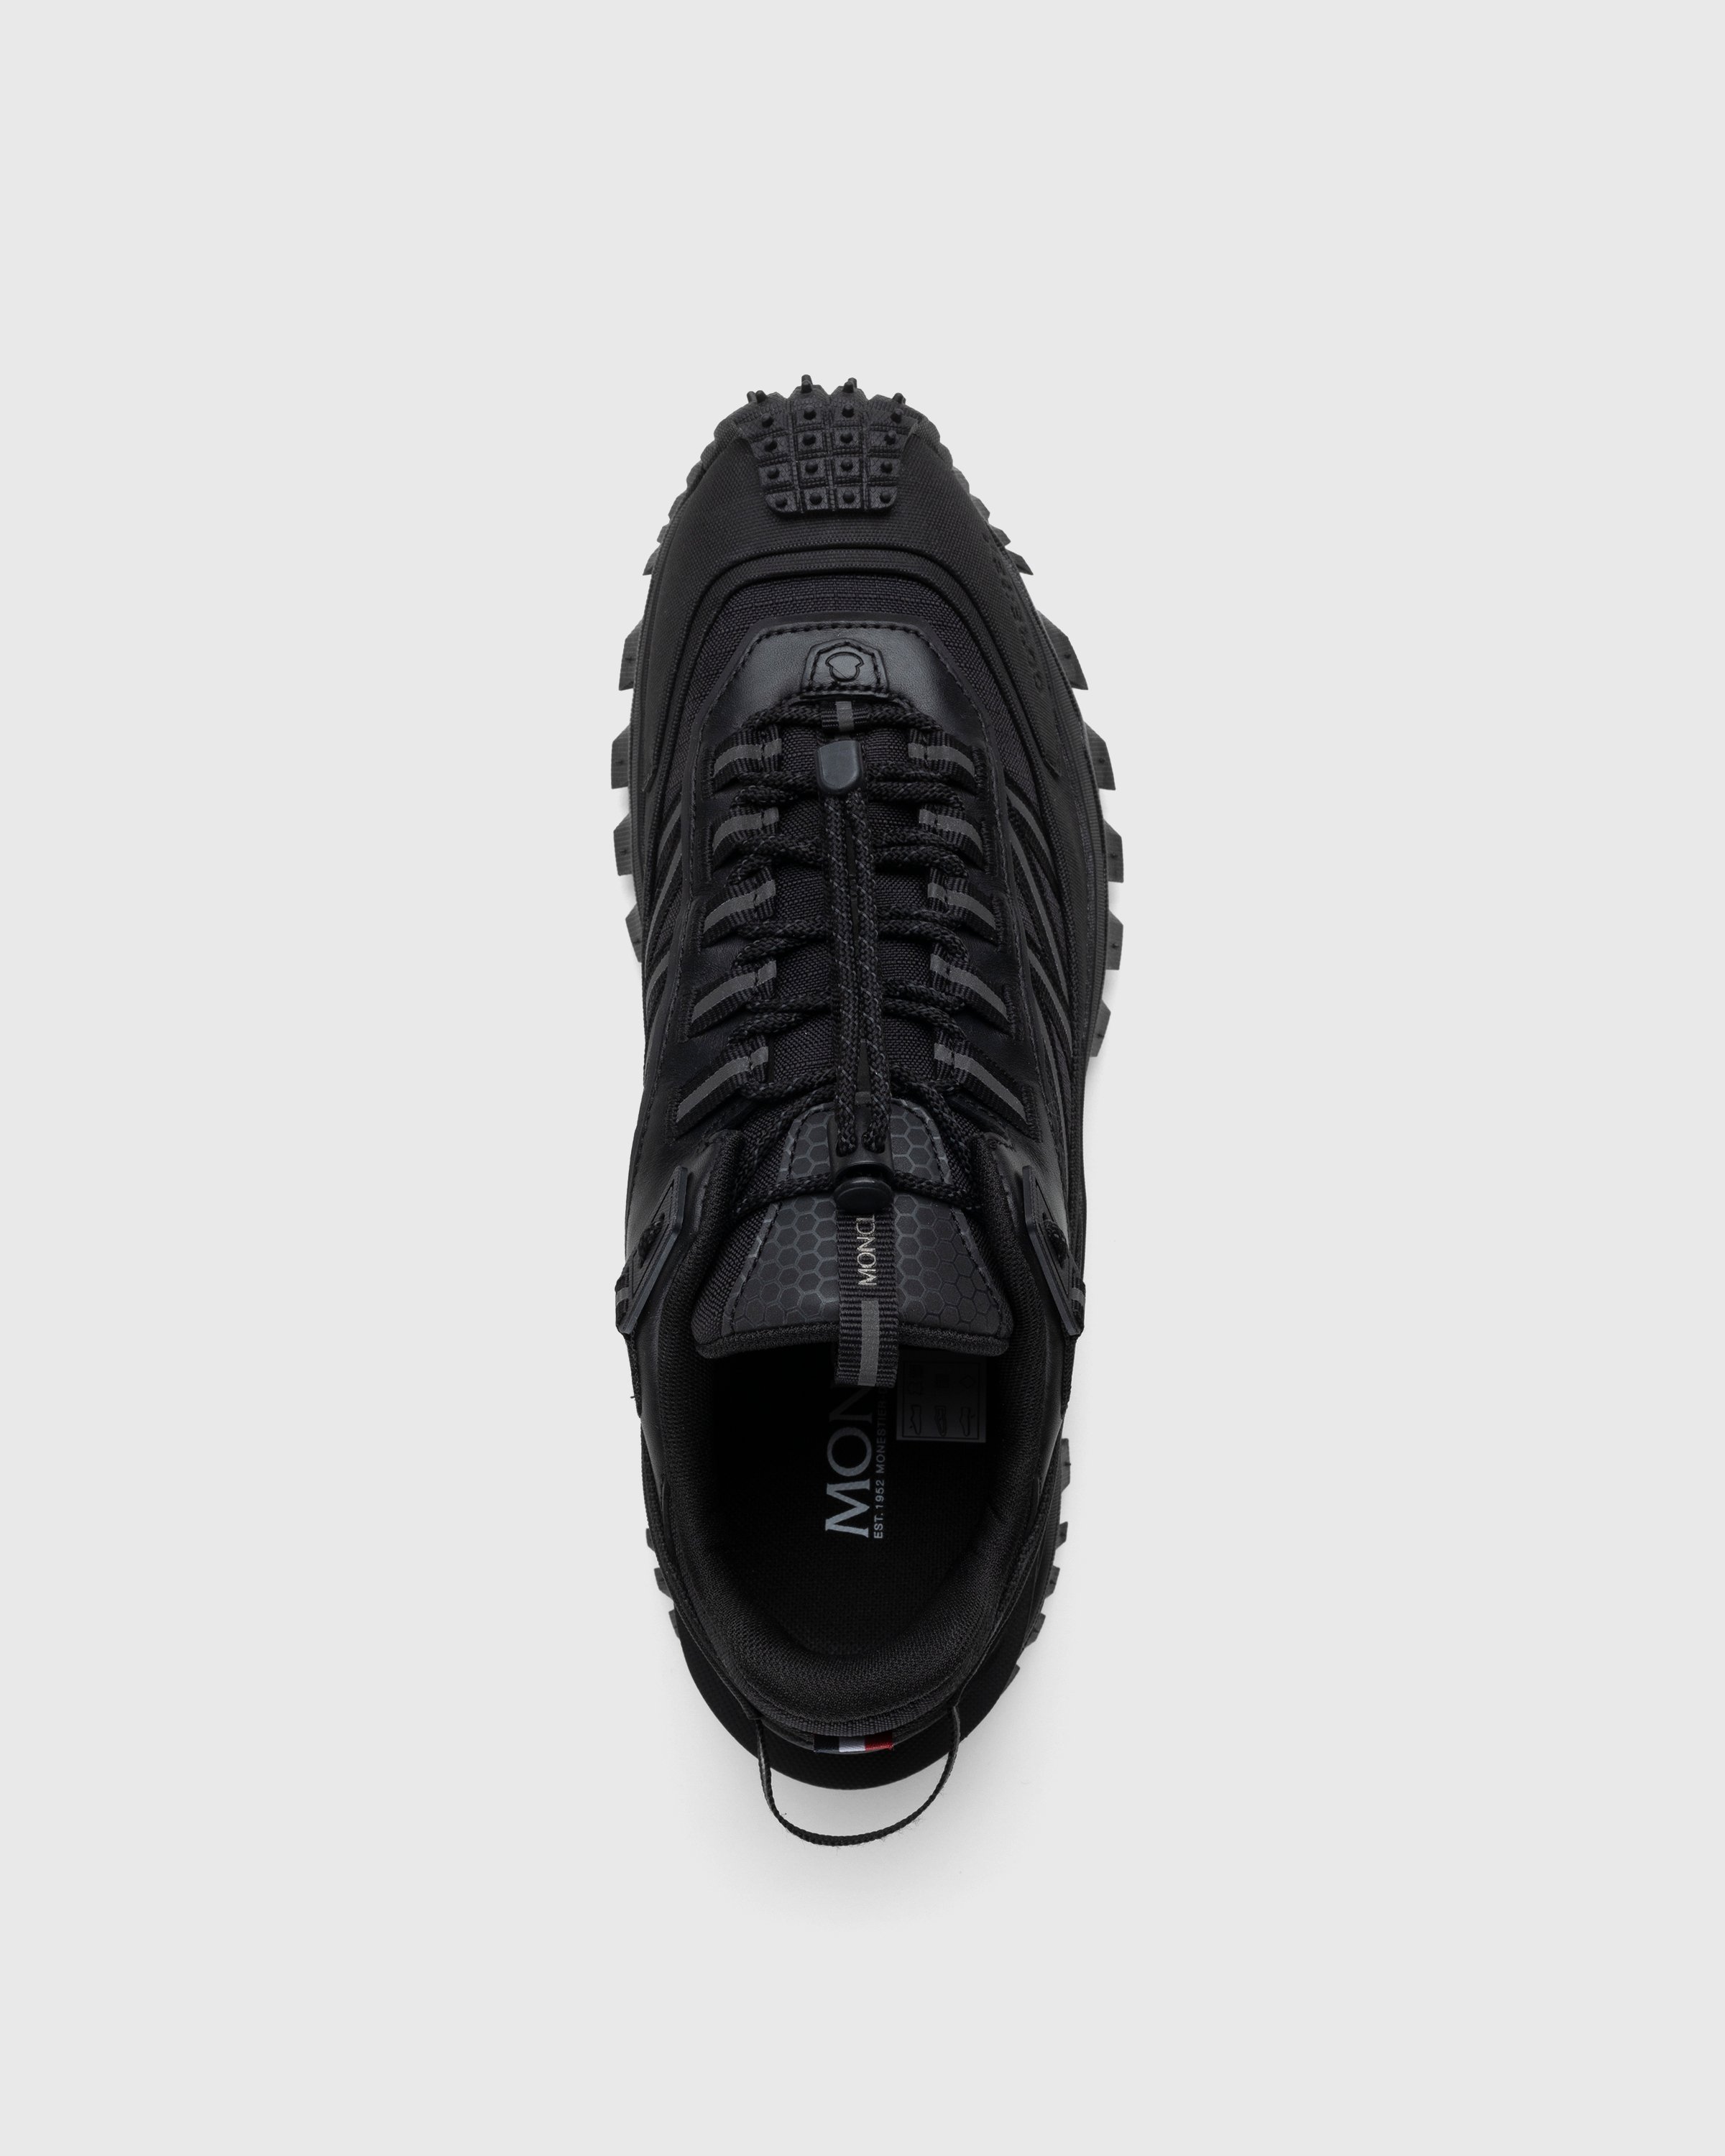 Moncler - Trailgrip GTX Sneakers Black - Footwear - Black - Image 5